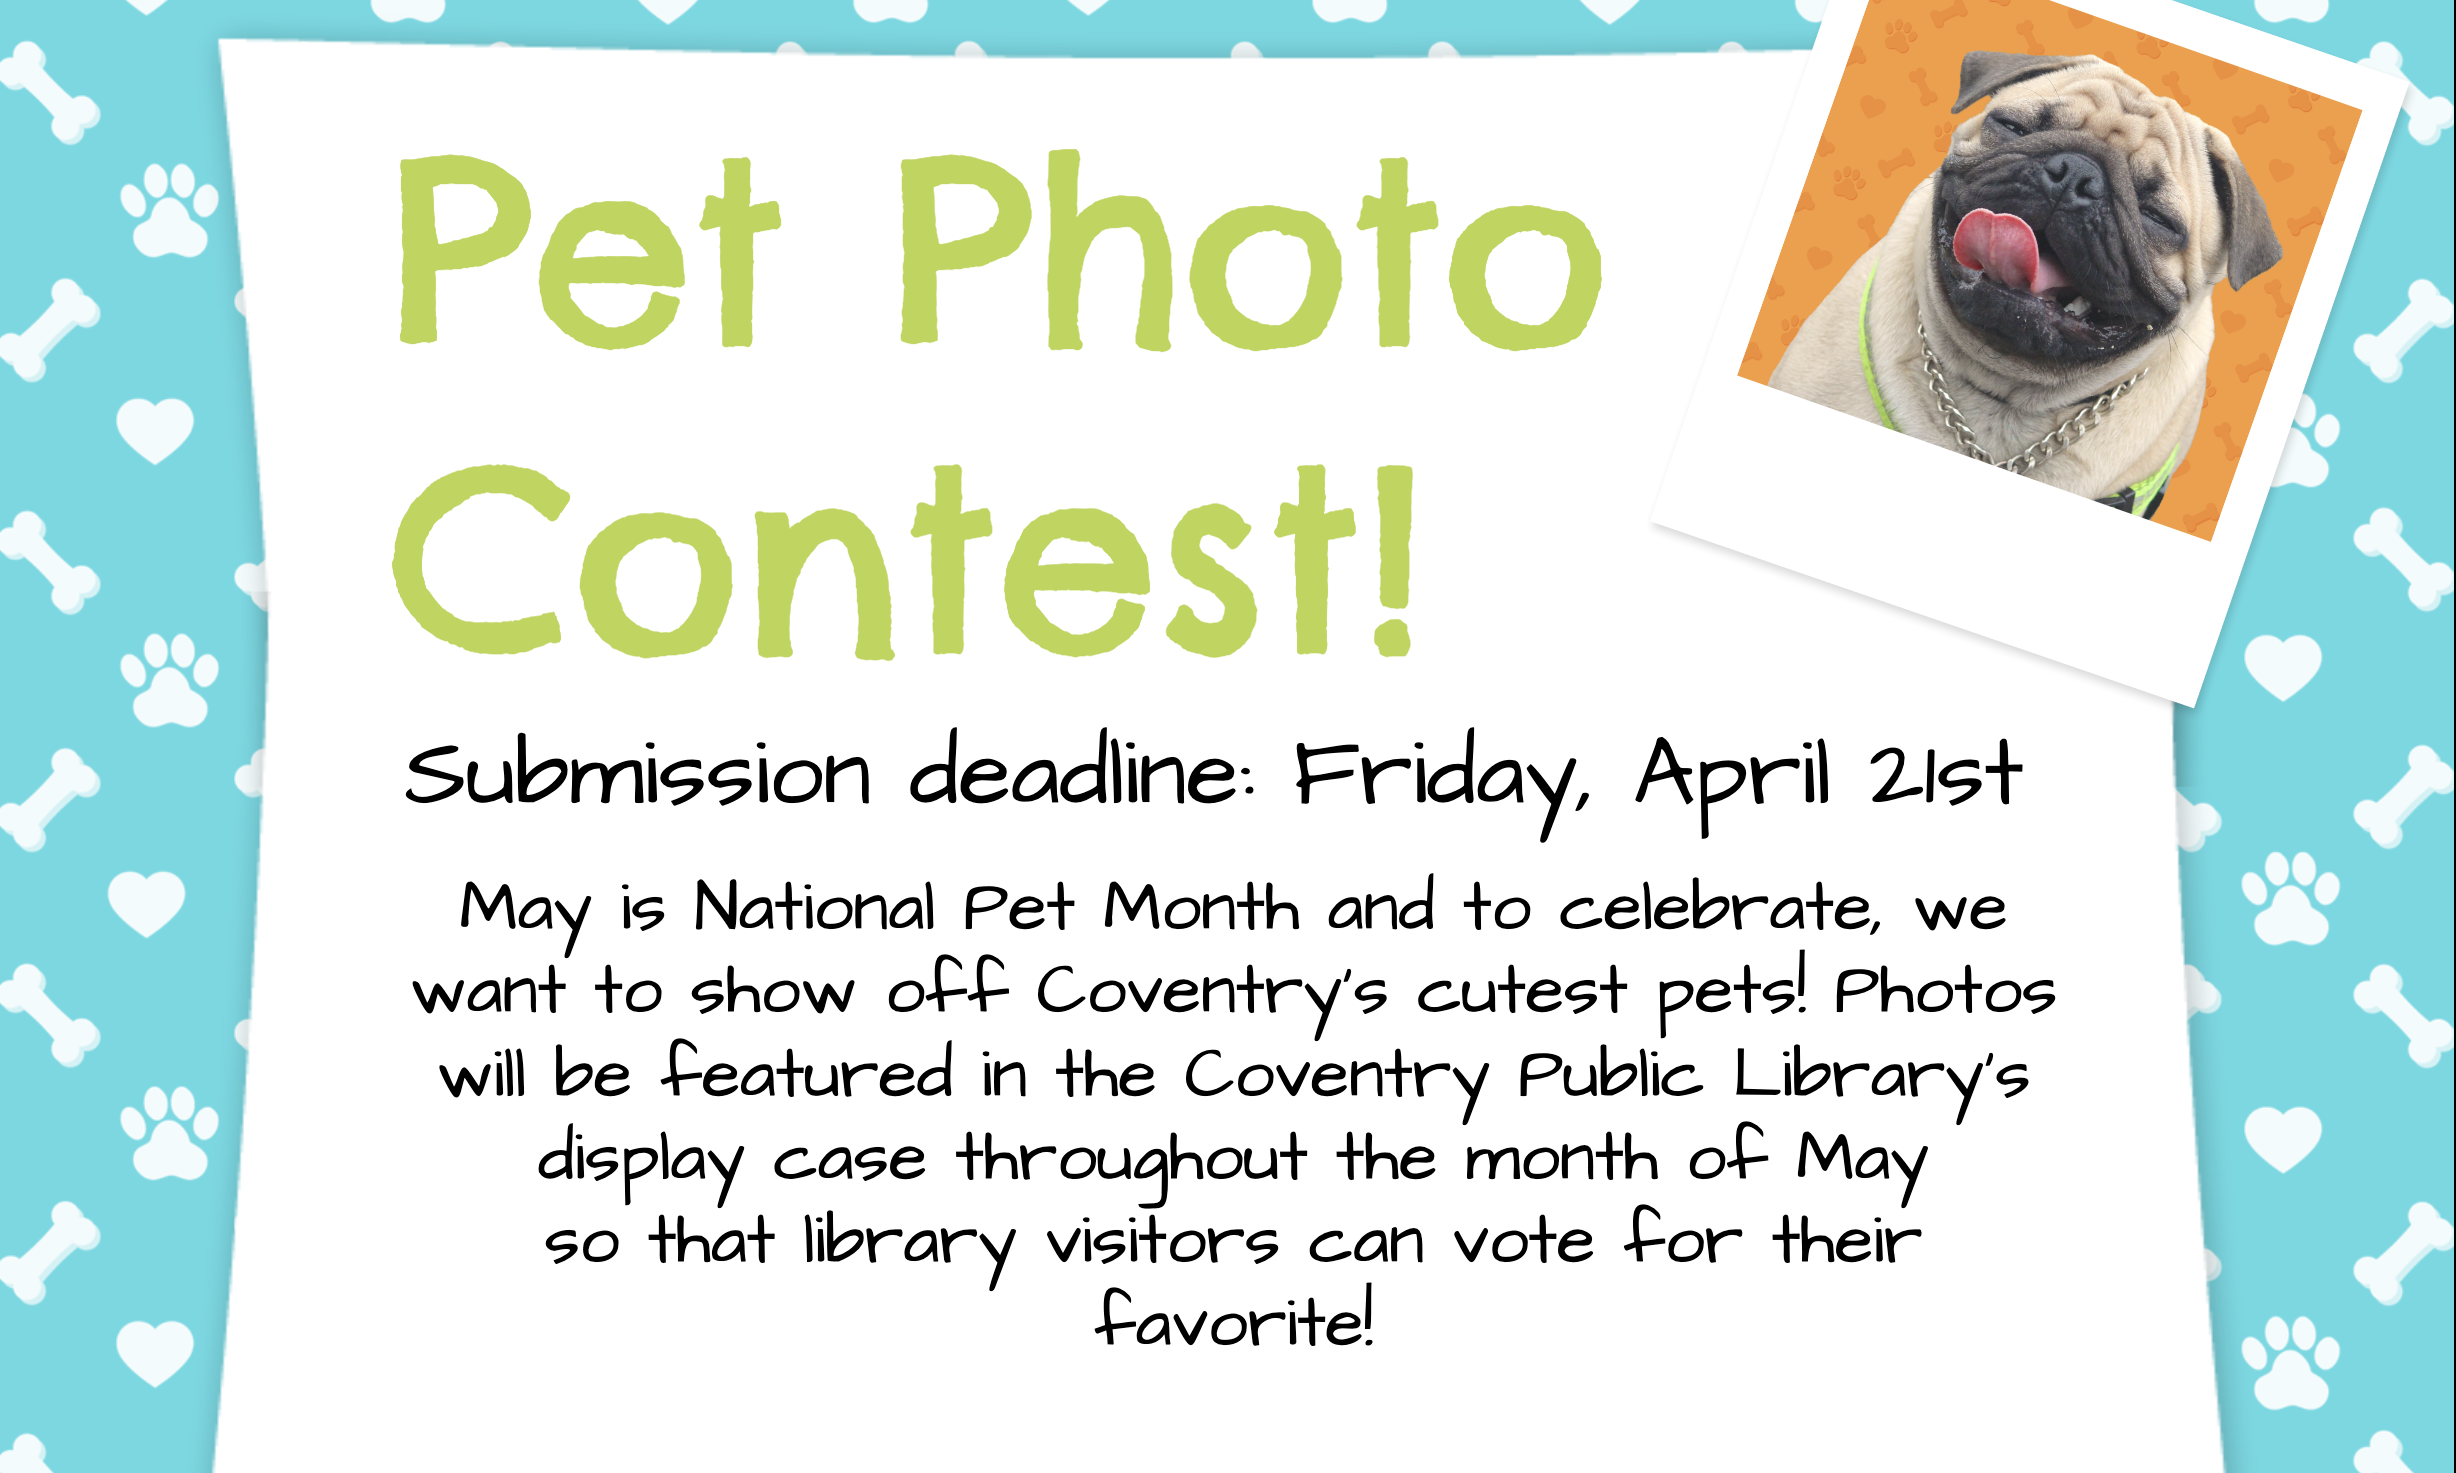 Pet Photo Contest - Submission deadline April 21st